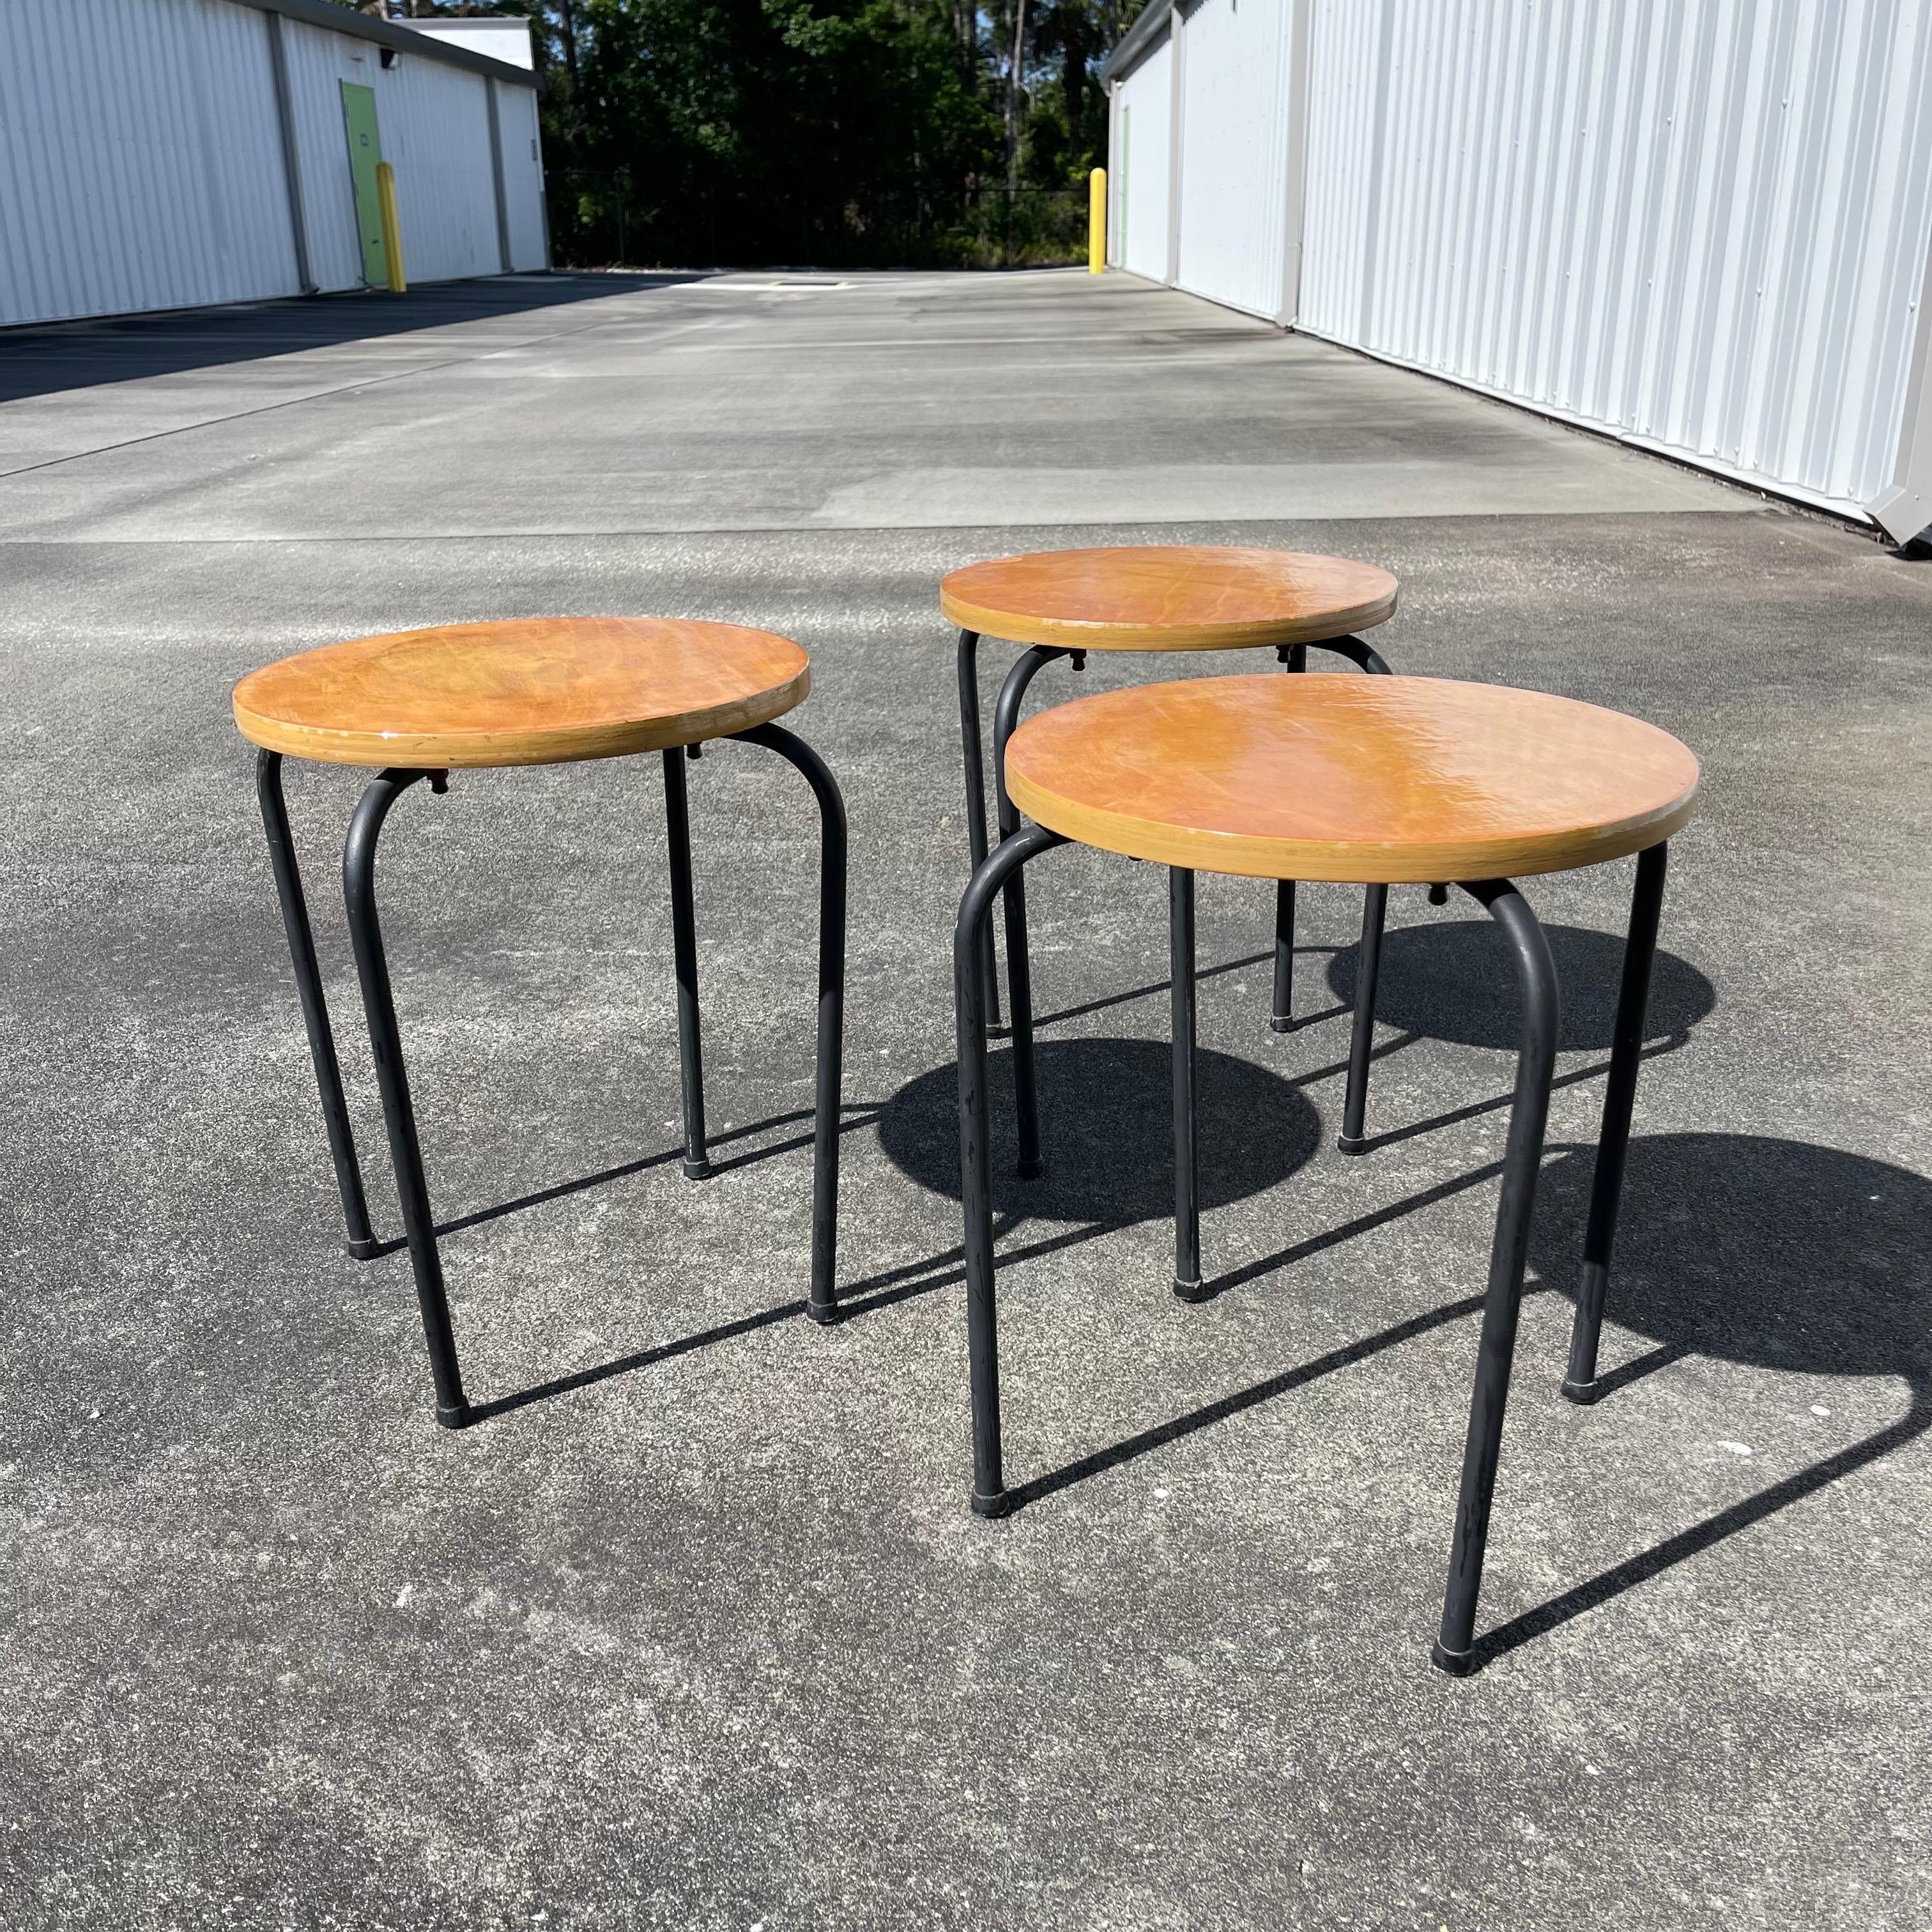 Ensemble de 3 tables ou tabourets empilables ronds en bois avec pieds en métal.